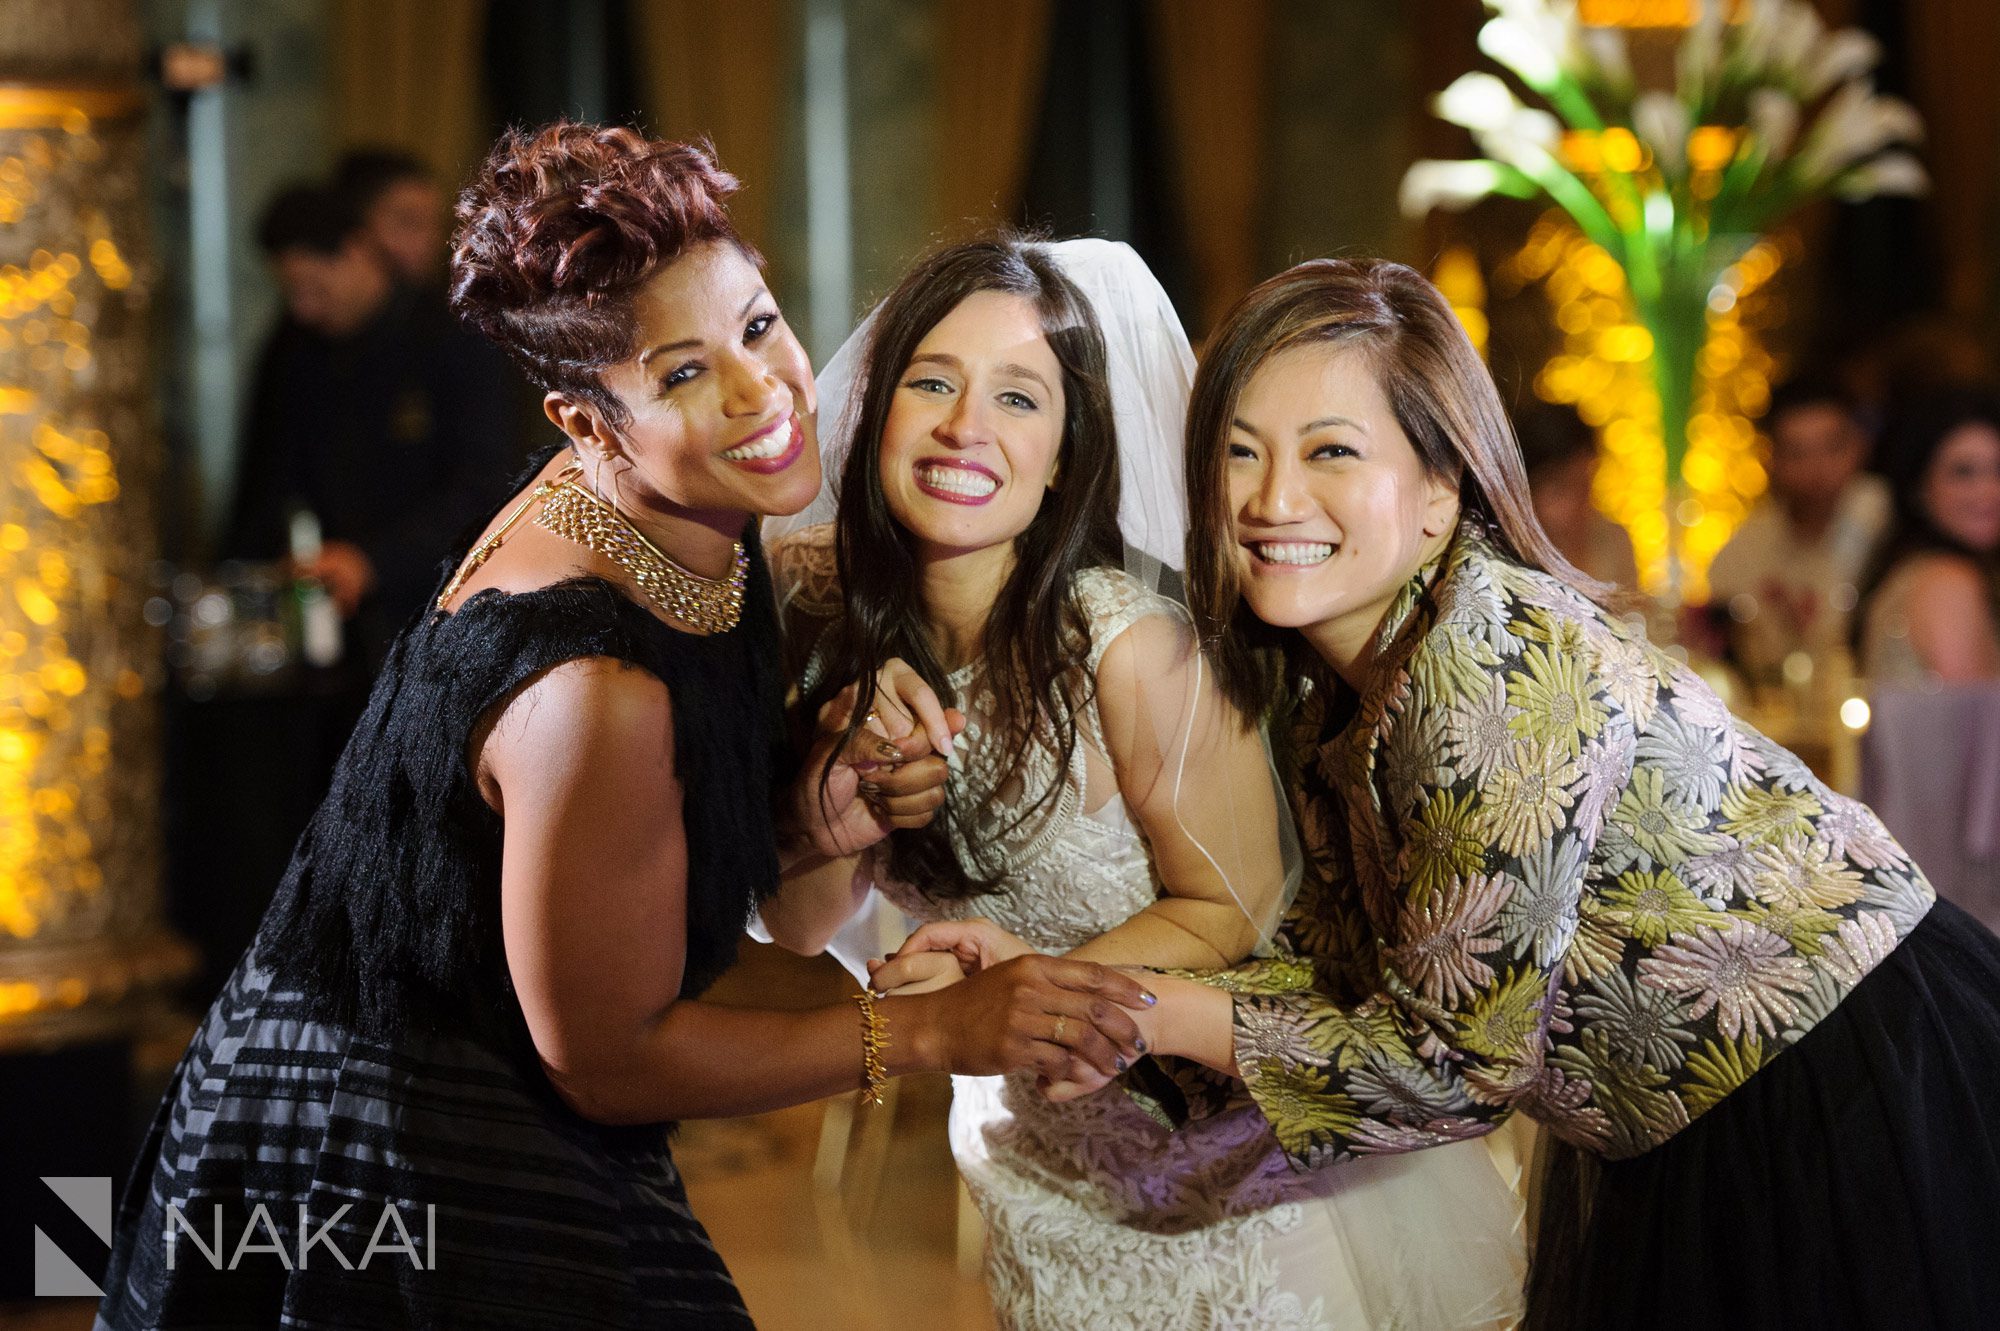 the-drake-wedding-reception-photos-chicago-nakai-photography-050